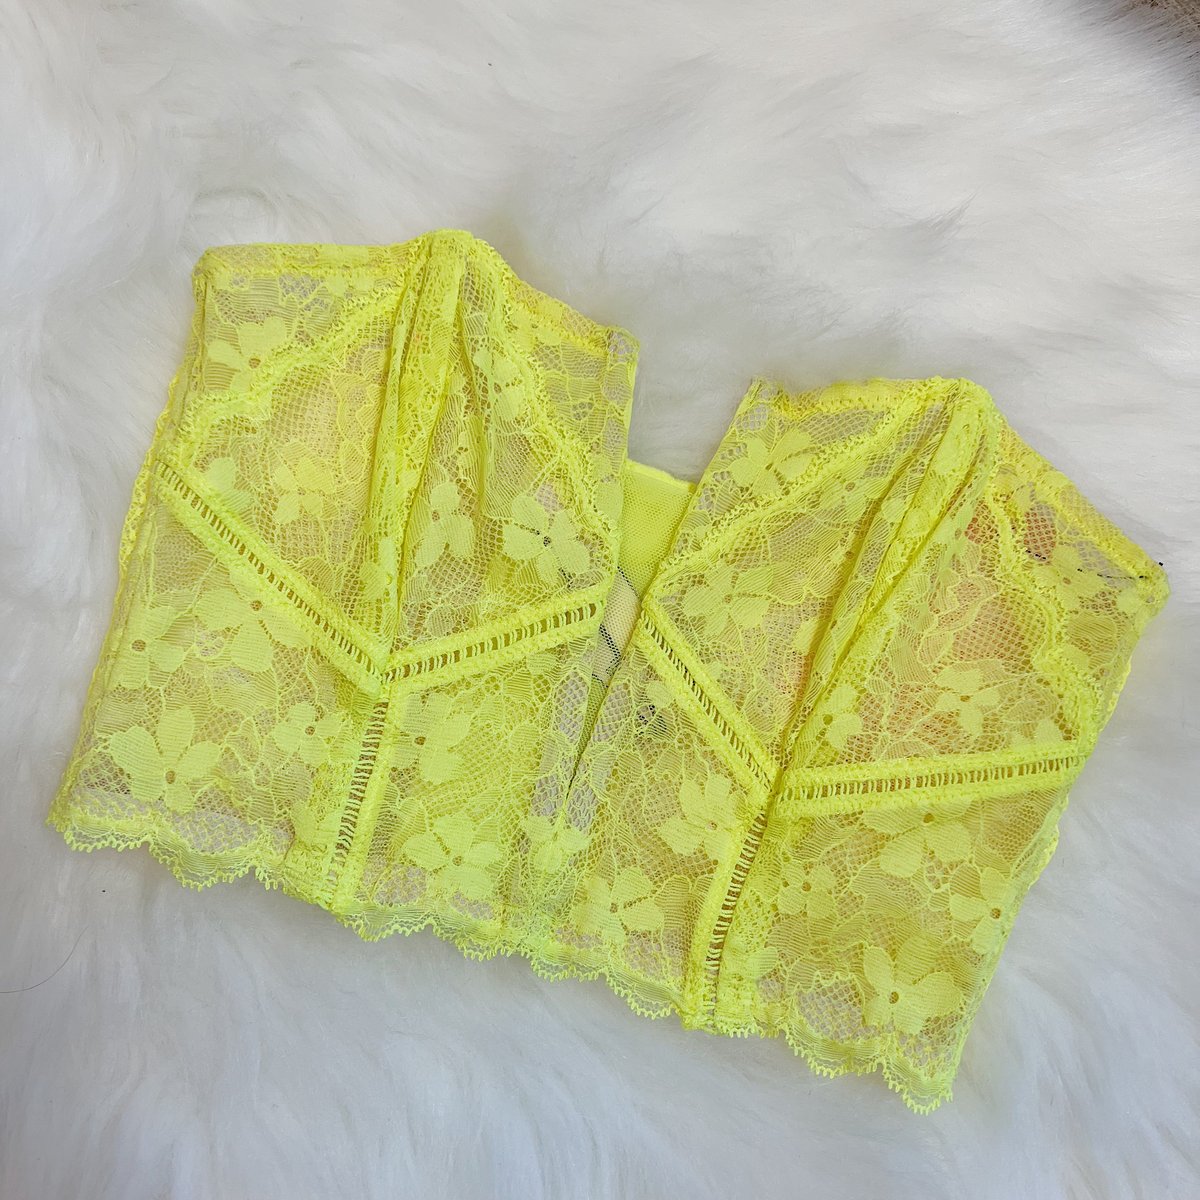 Sizes XS & M/L - Victoria's Secret Yellow Mesh Lace Bustier Top